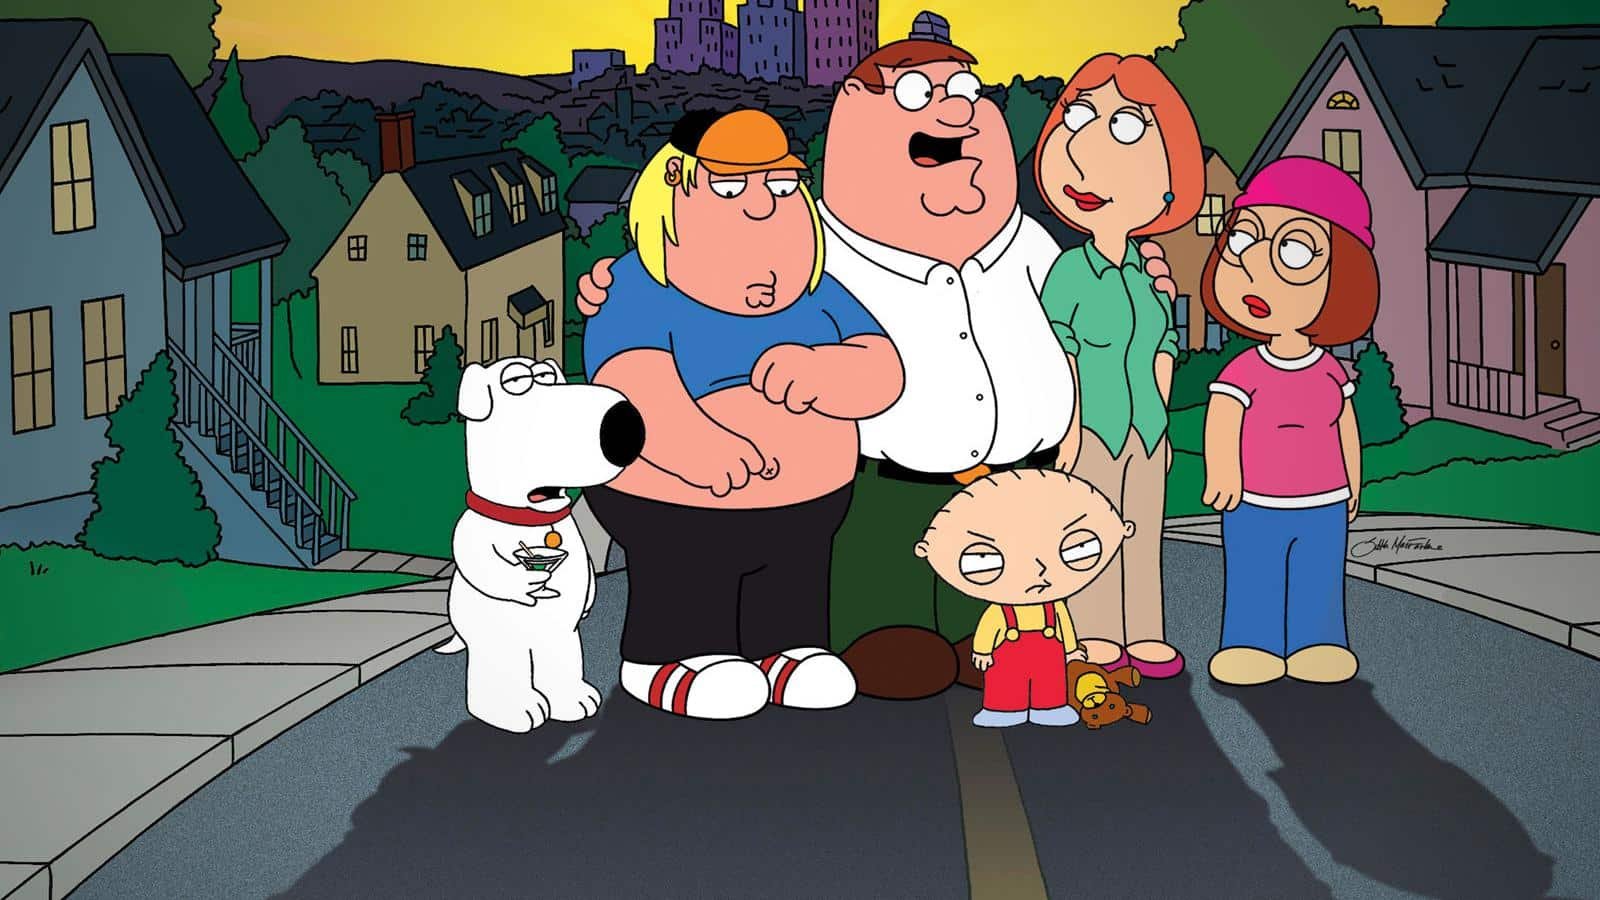 Family Guy Season 21 Release Date